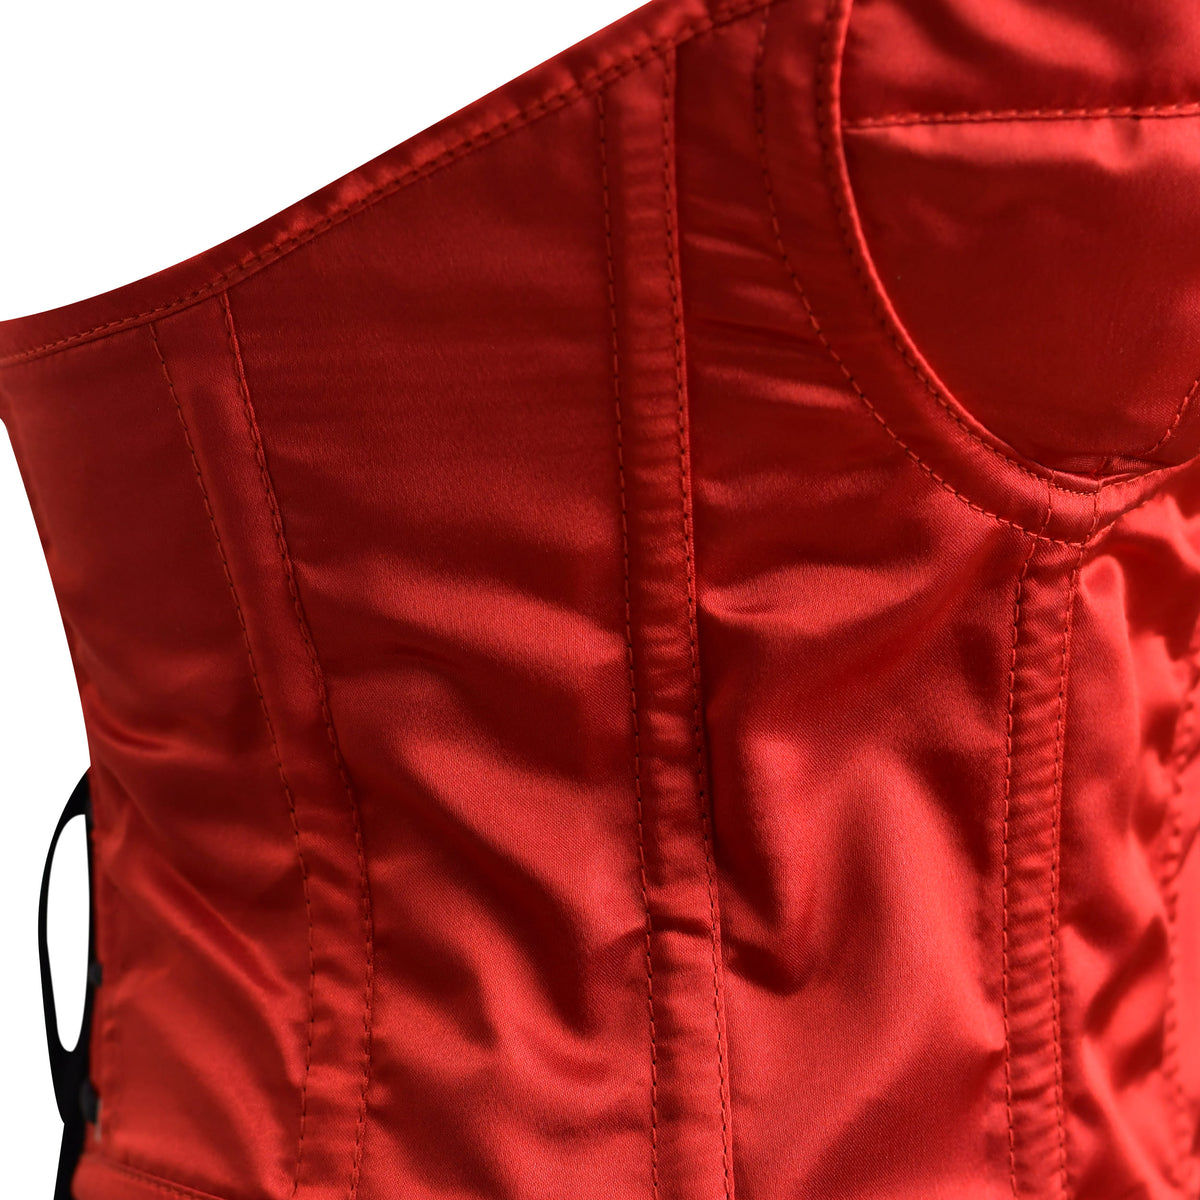 Red Satin corset top